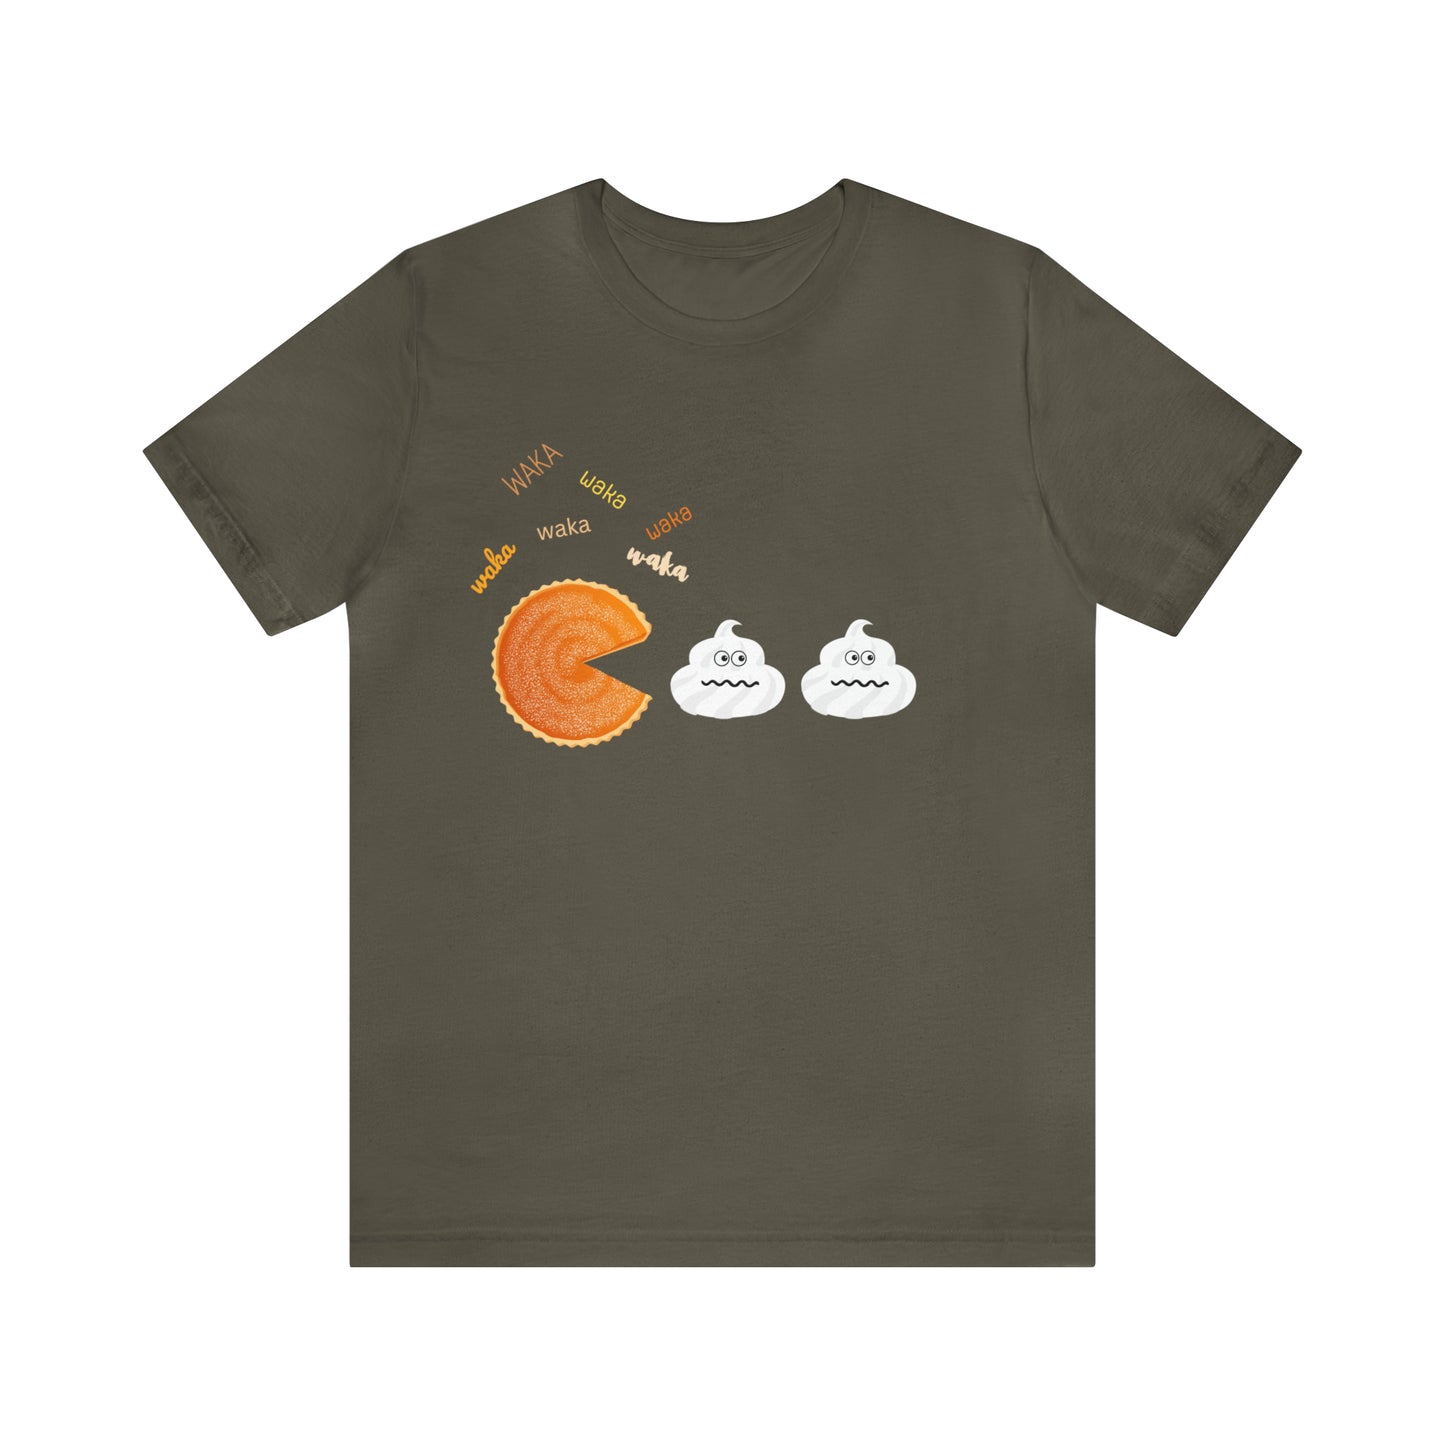 Thanksgiving Tshirt, Pumpkin Pie Shirt, Fall Shirt Women, Funny Holiday Sweatshirt, Humor Quote T-Shirt, Gift for Her, Family Thanksgiving, Pumpkin Pac-Man T-shirt